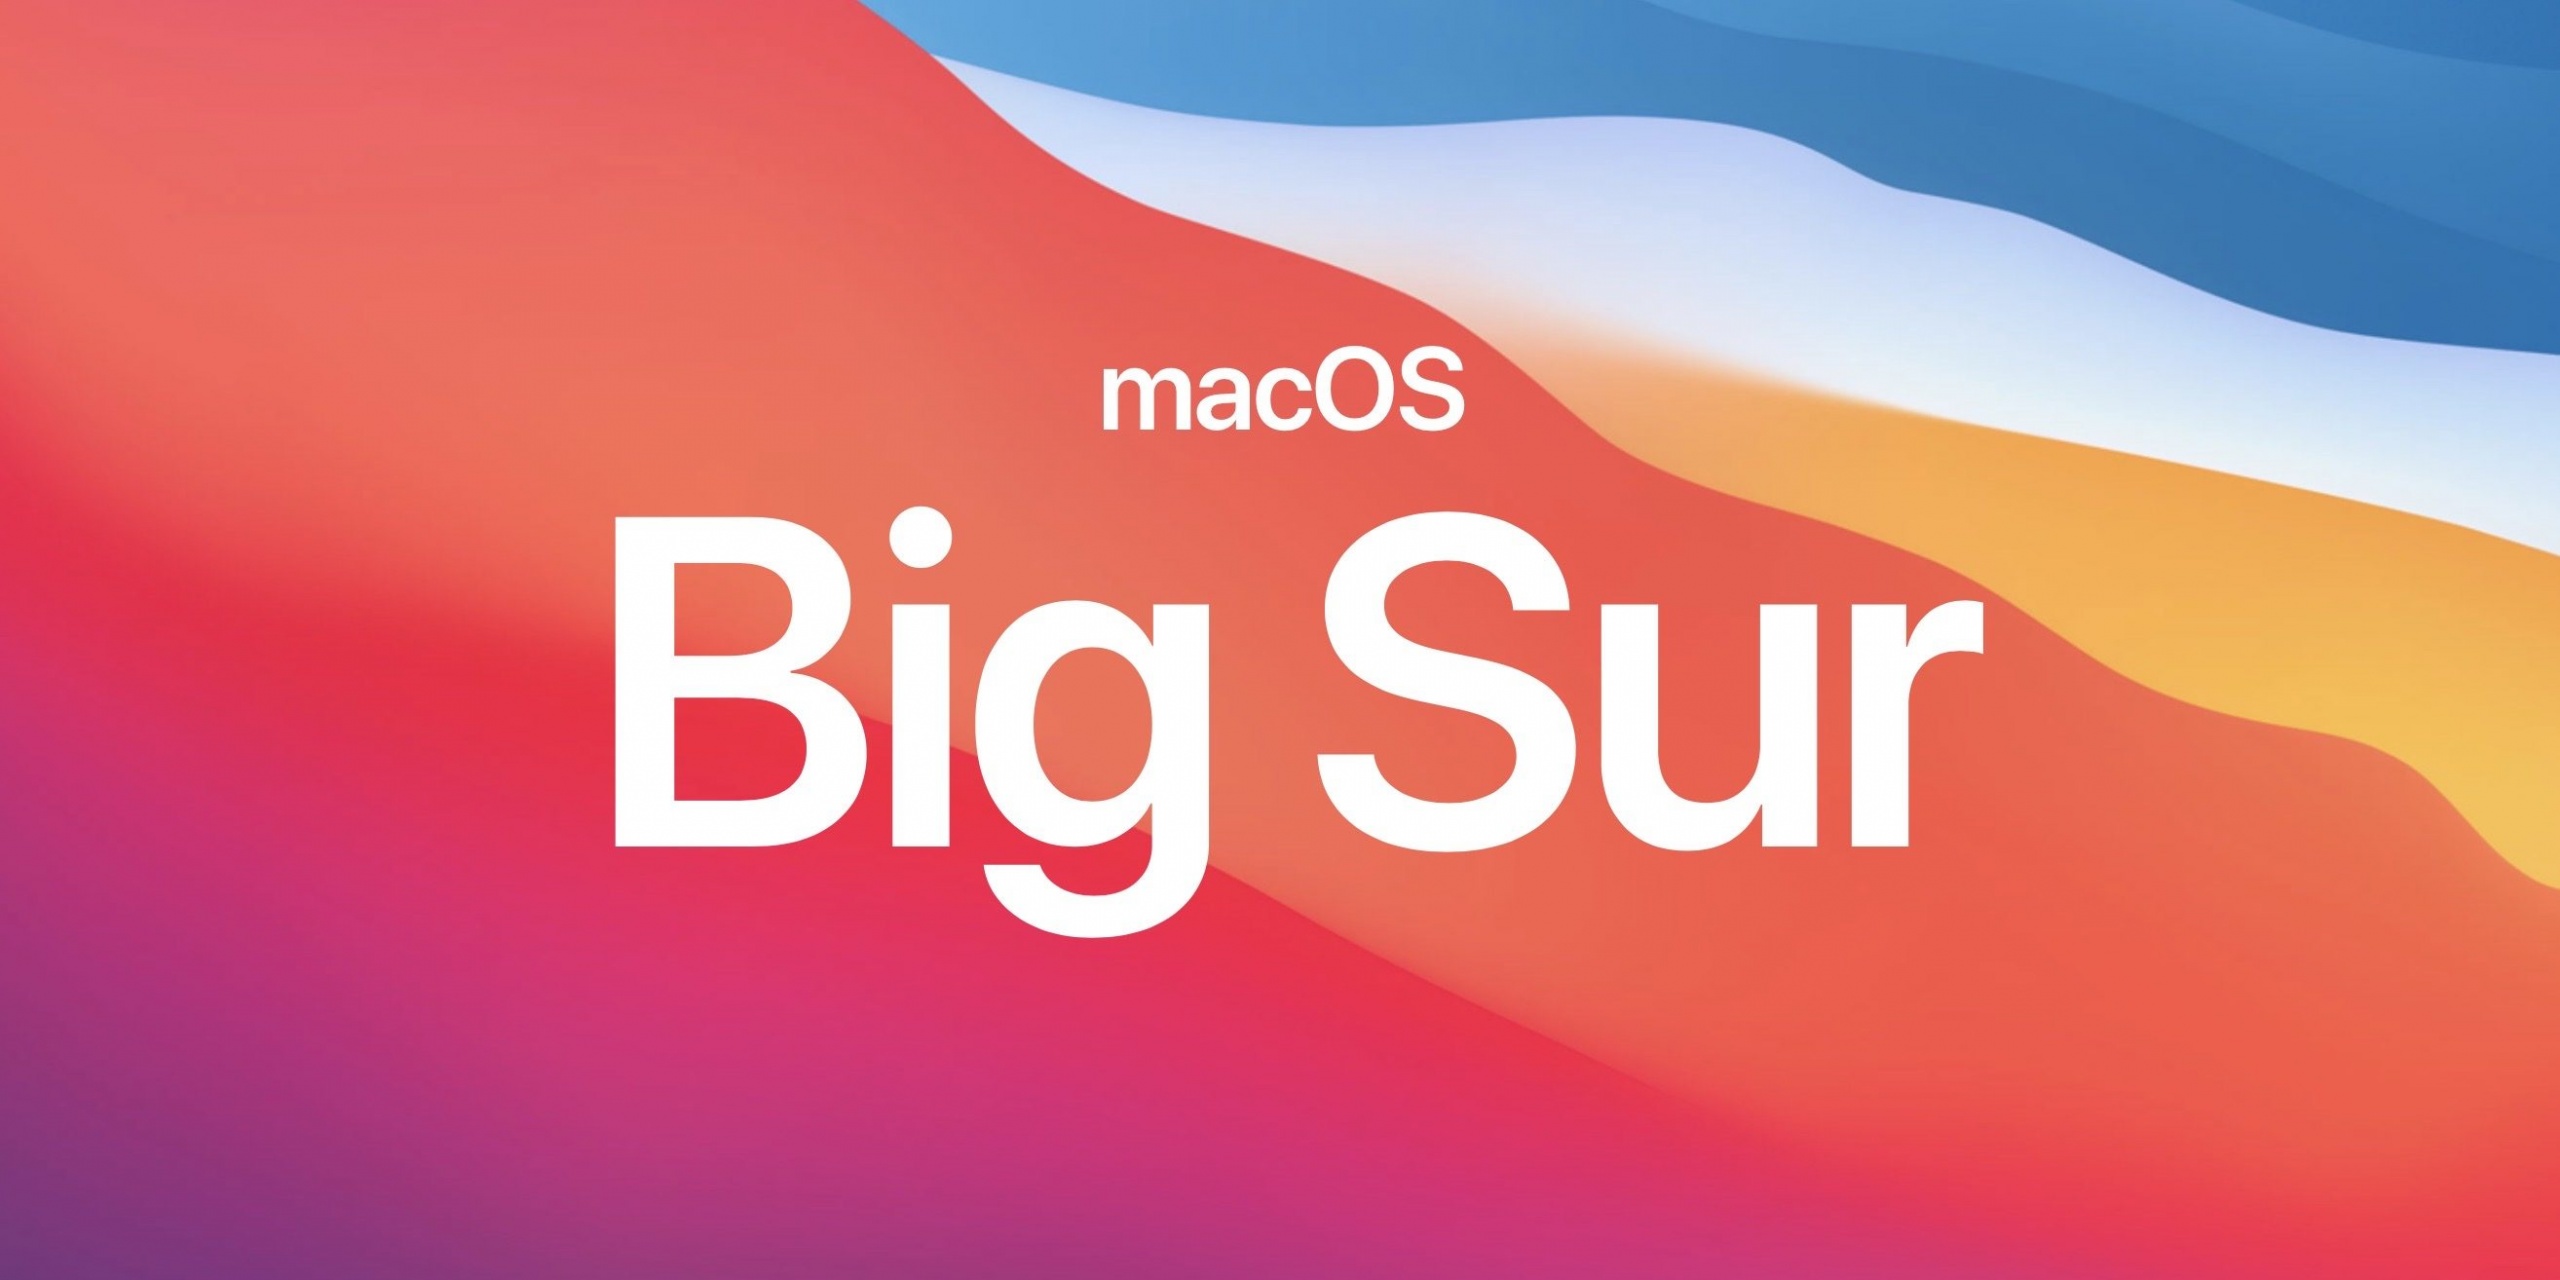 Appleは、T2チップを搭載したMacが新しいmacOS BigSurで4KNetflixをストリーミングすることのみを許可しています